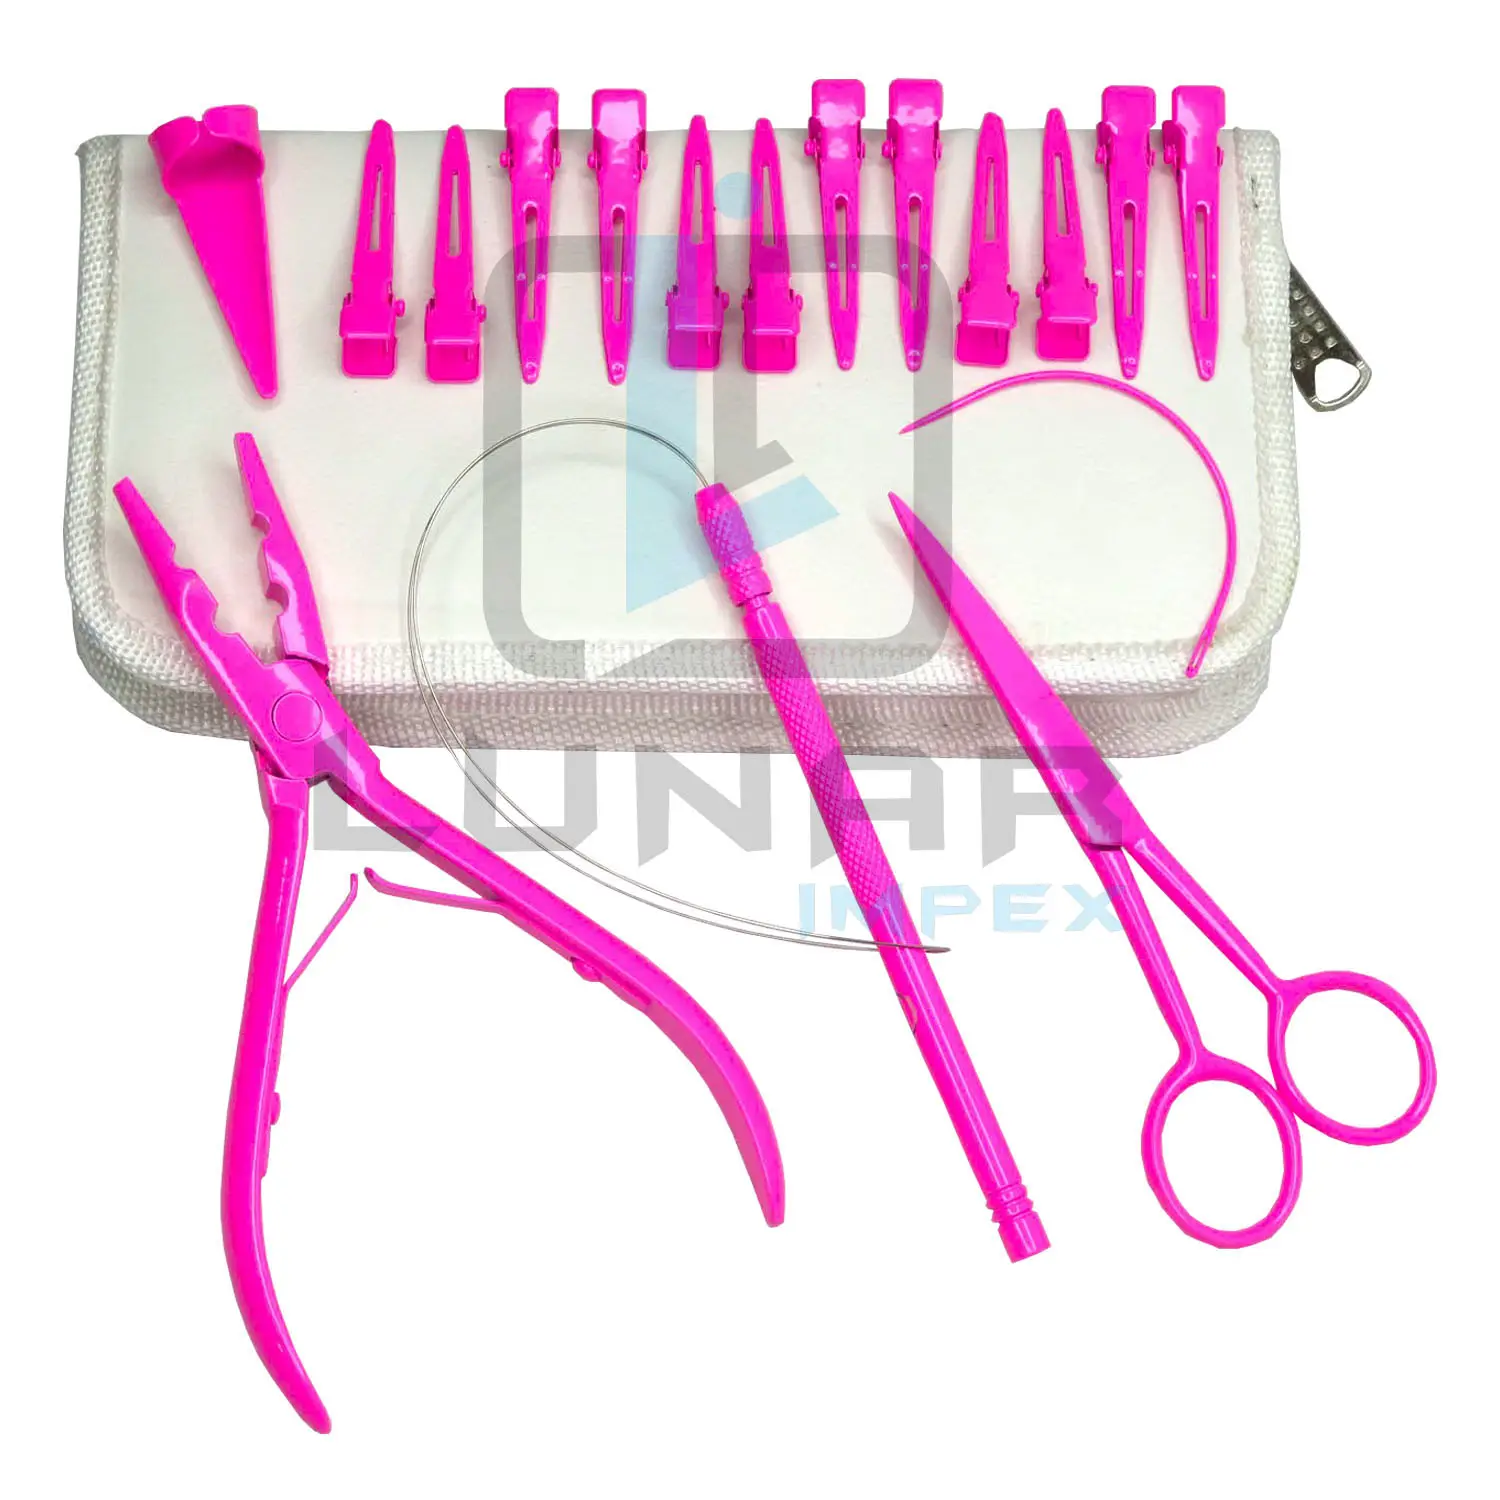 आंखों को पकड़ने वाले बाल विस्तार उपकरण किट के साथ गर्म गुलाबी रंग में आंख पकड़ने वाले बाल विस्तार उपकरण किट